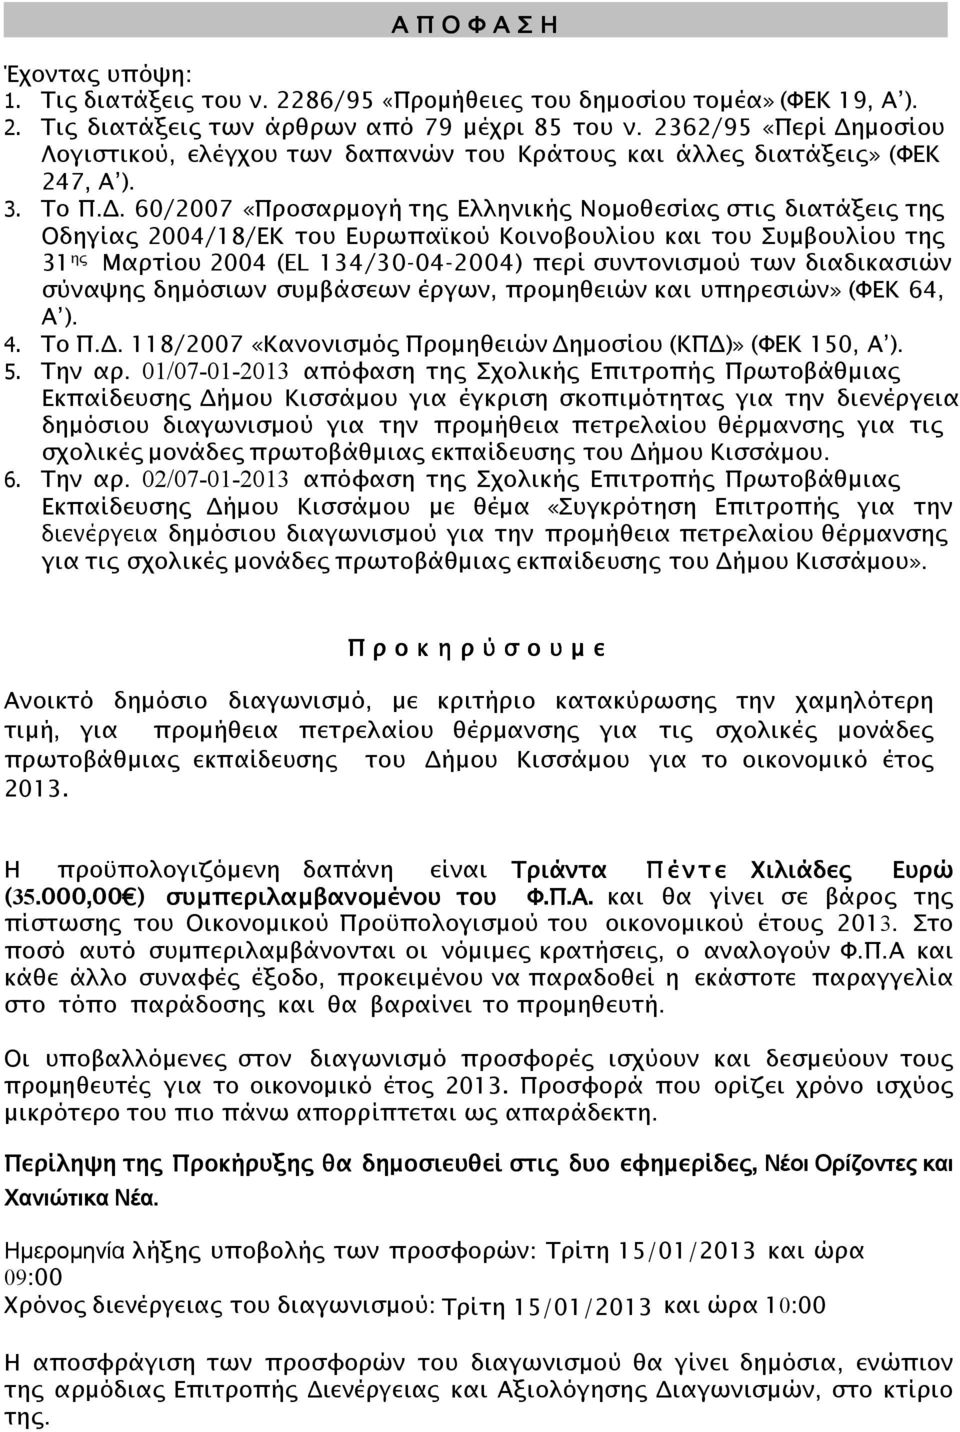 . 60/2007 «Προσαρµογή της Ελληνικής Νοµοθεσίας στις διατάξεις της Οδηγίας 2004/18/ΕΚ του Ευρωπα@κού Κοινοβουλίου και του Συµβουλίου της 31 ης Μαρτίου 2004 (EL 134/30-04-2004) περί συντονισµού των